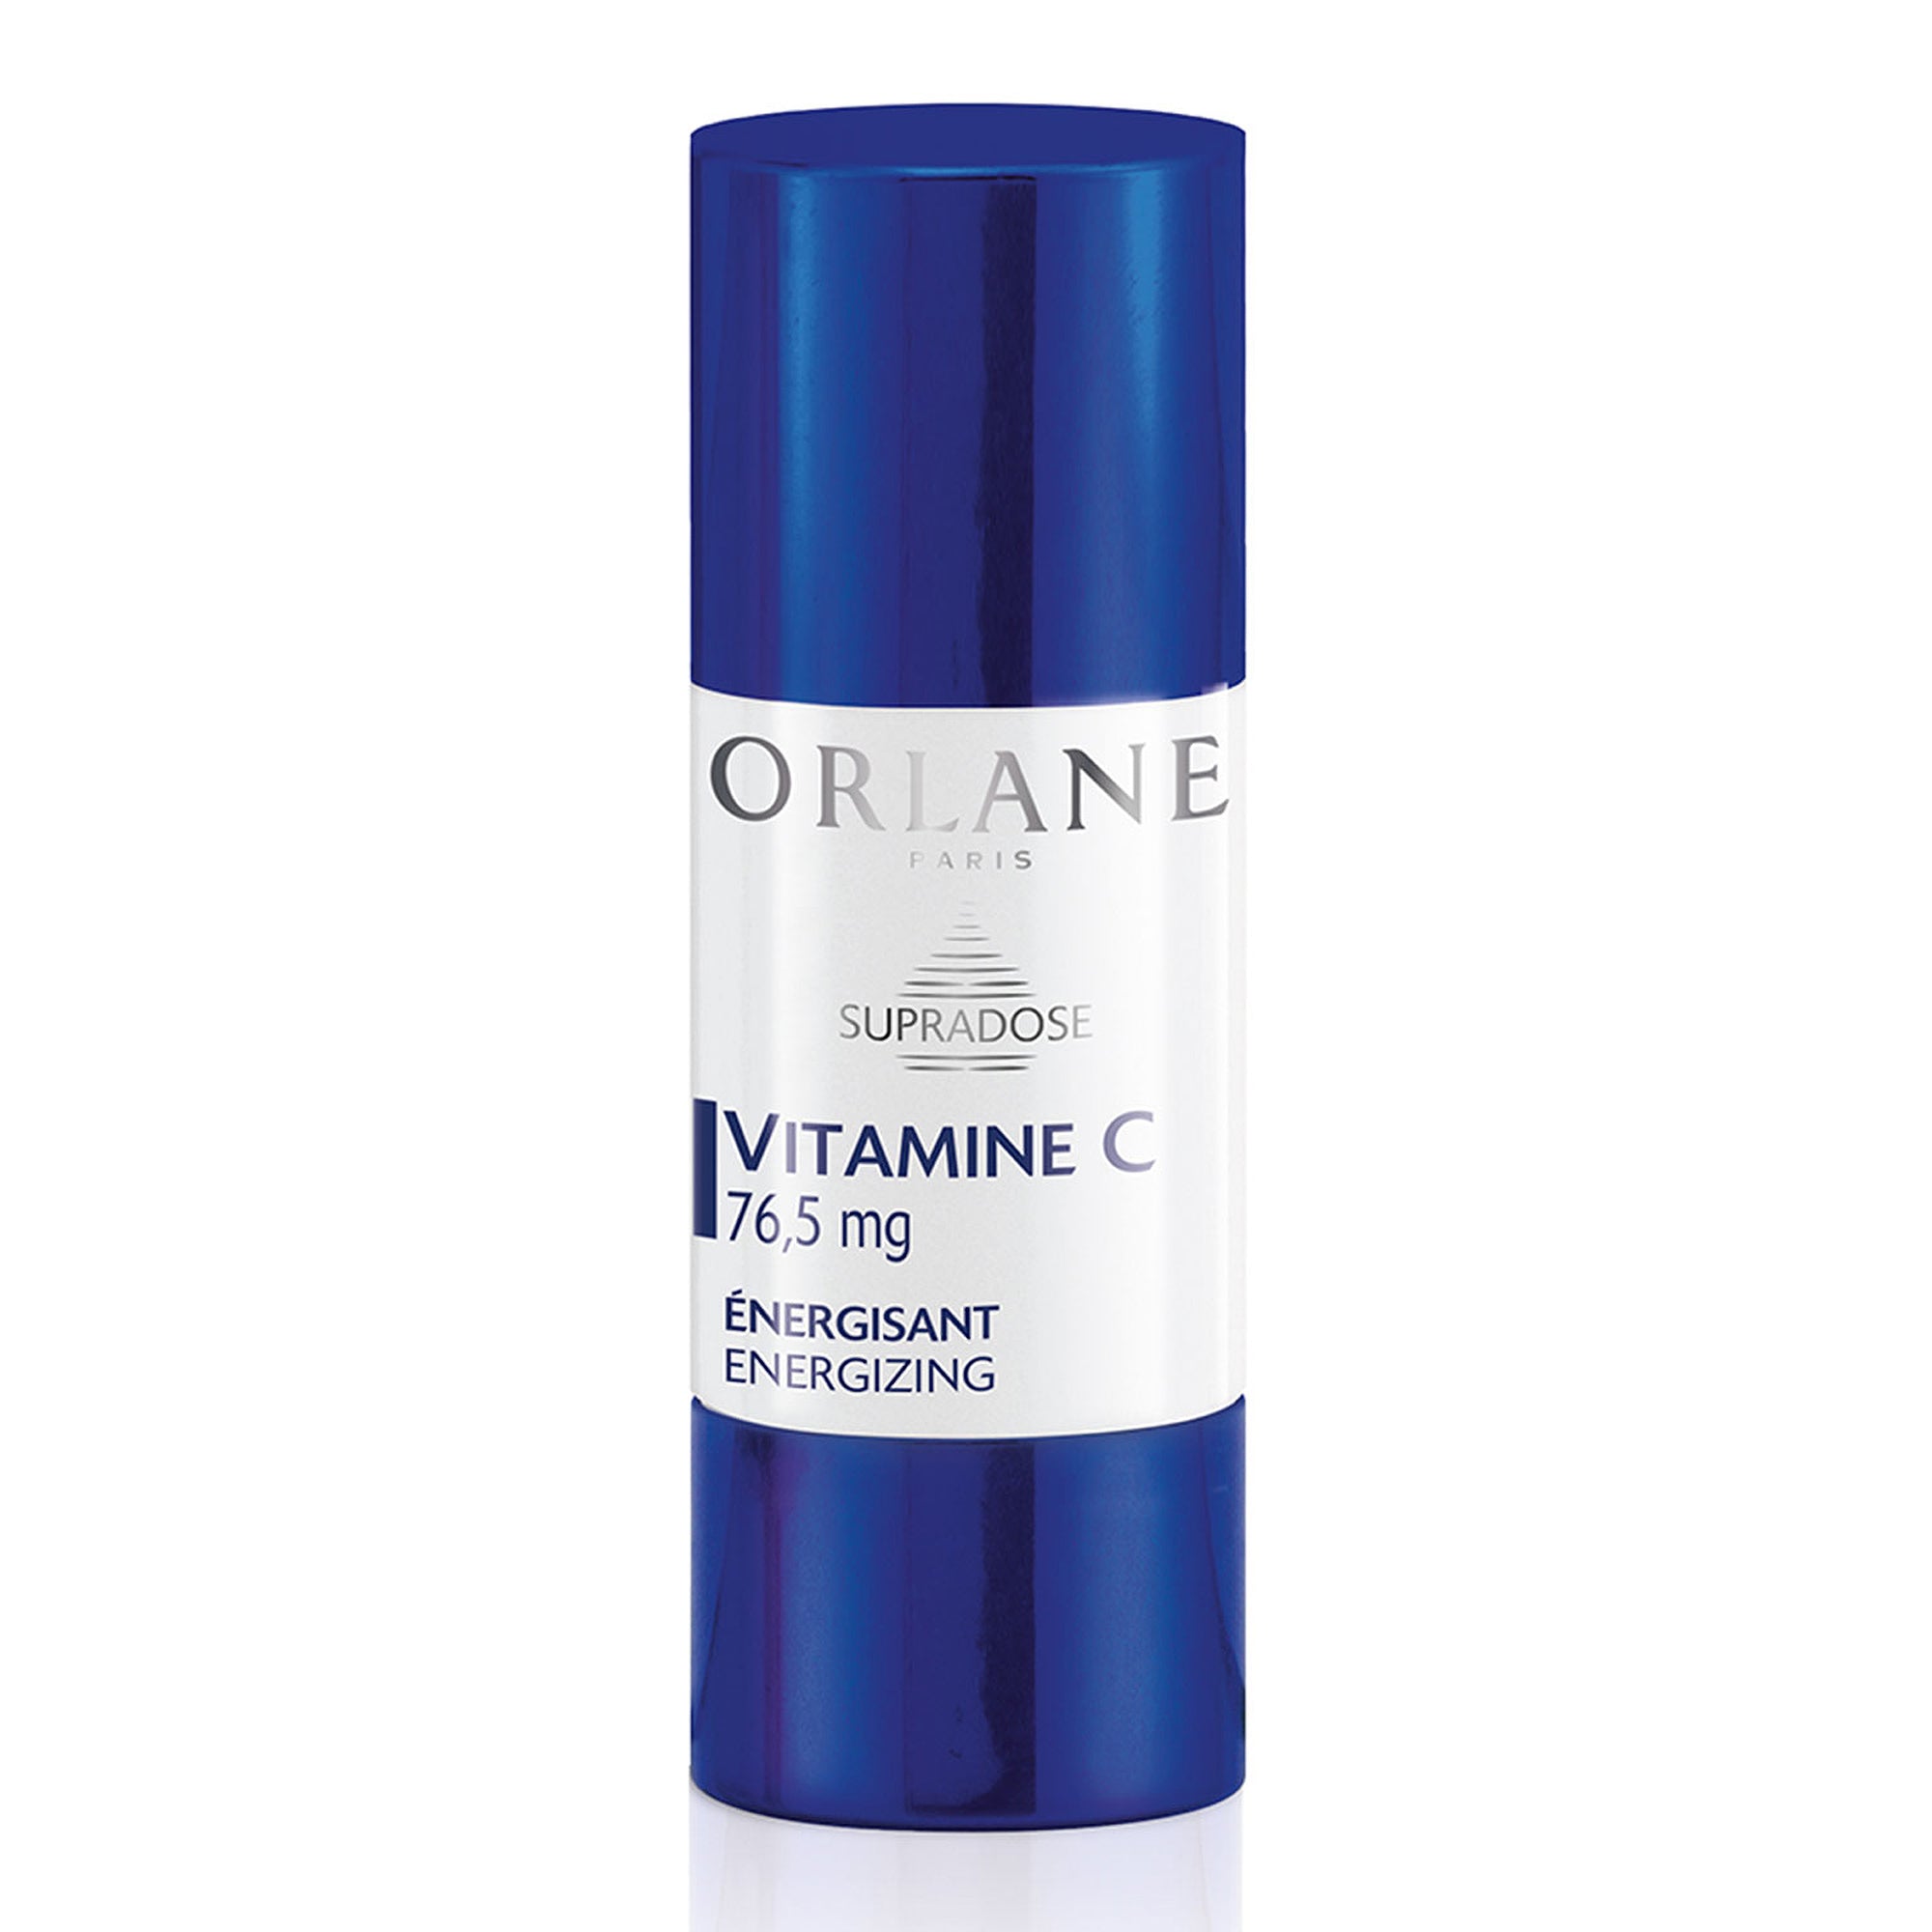 Orlane Vitamin C Supradose